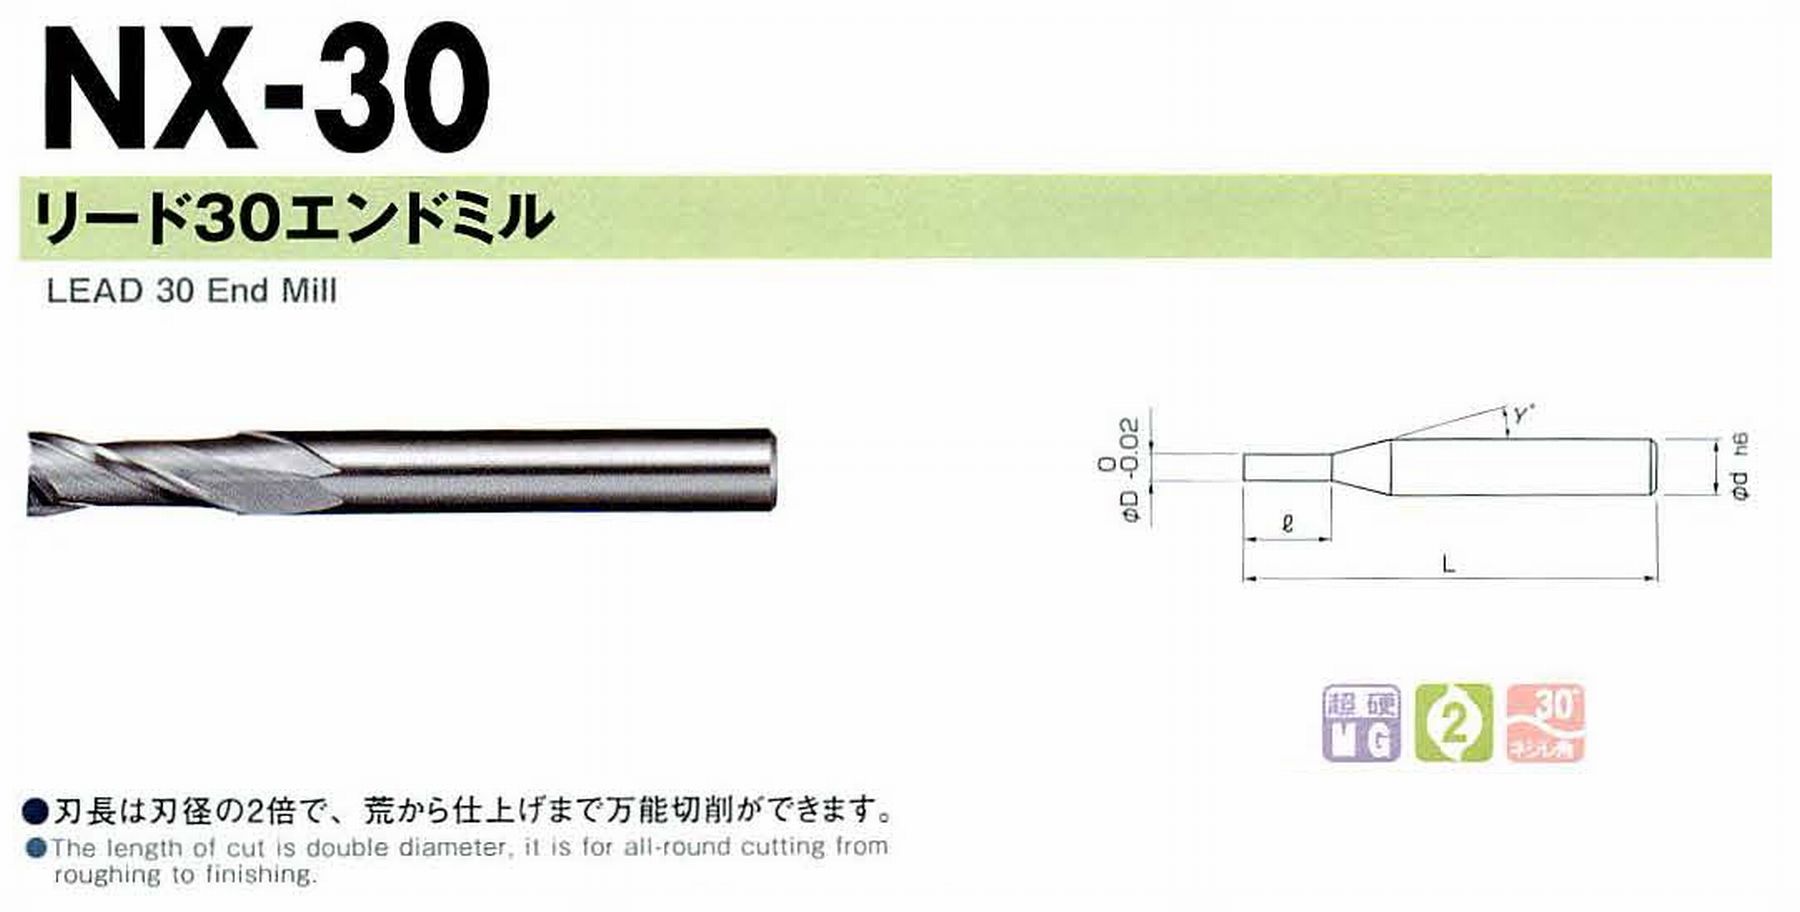 NS 日進工具 NX-30 リード30エンドミル コードNO．01-00030-00200 刃径2 刃長4 首角9° シャンク径4mm 全長40